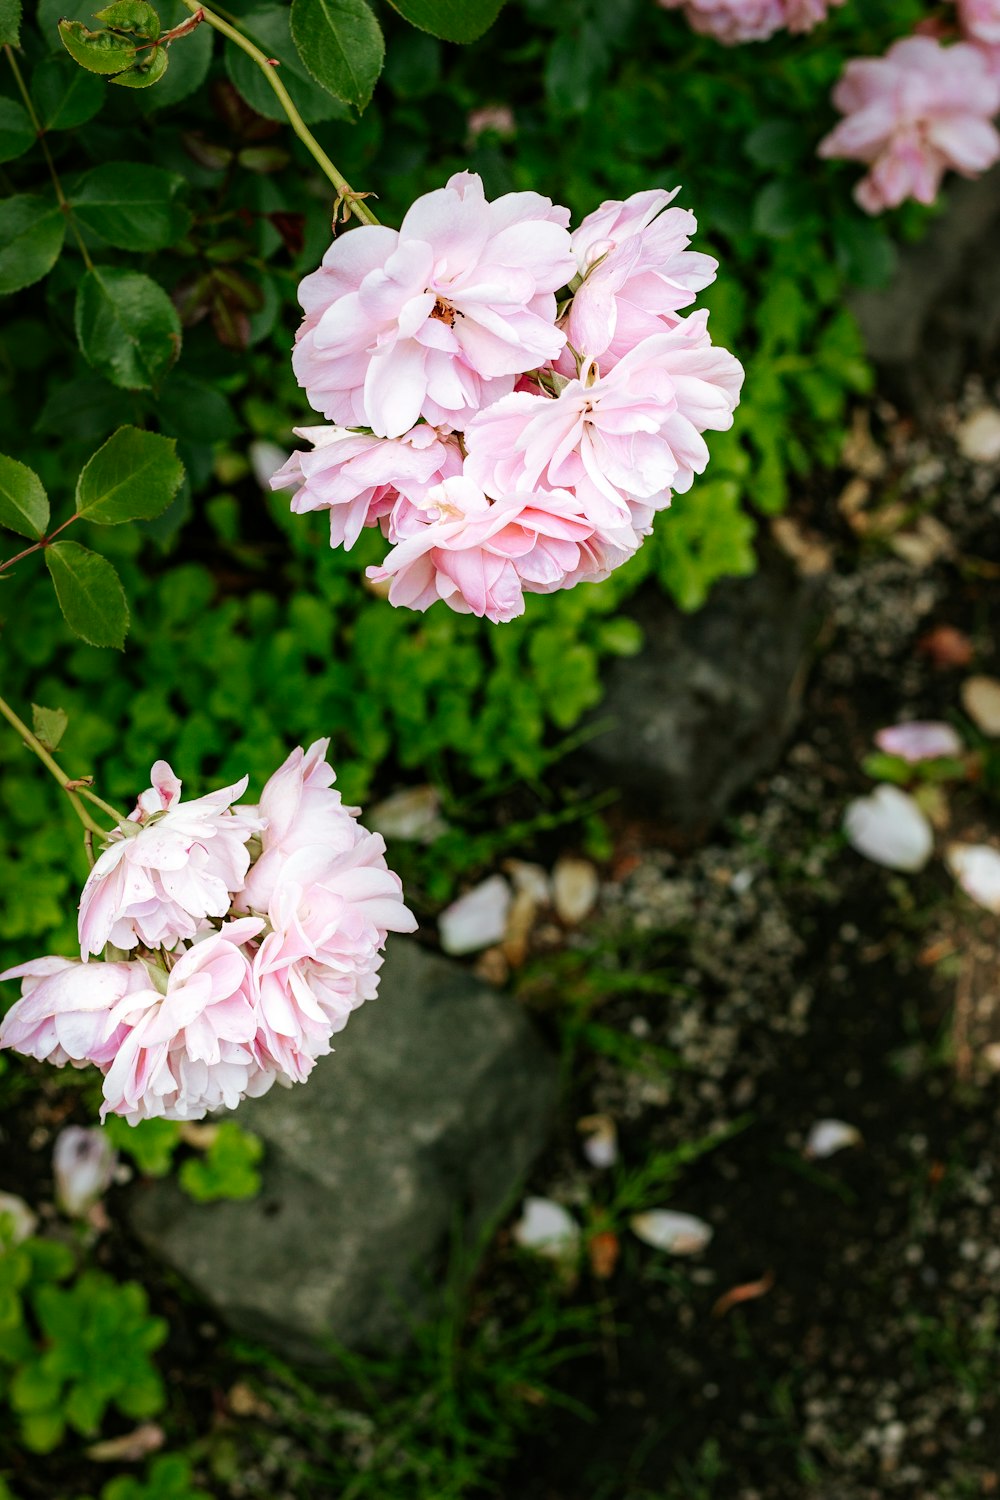 flores rosadas y blancas sobre hojas verdes